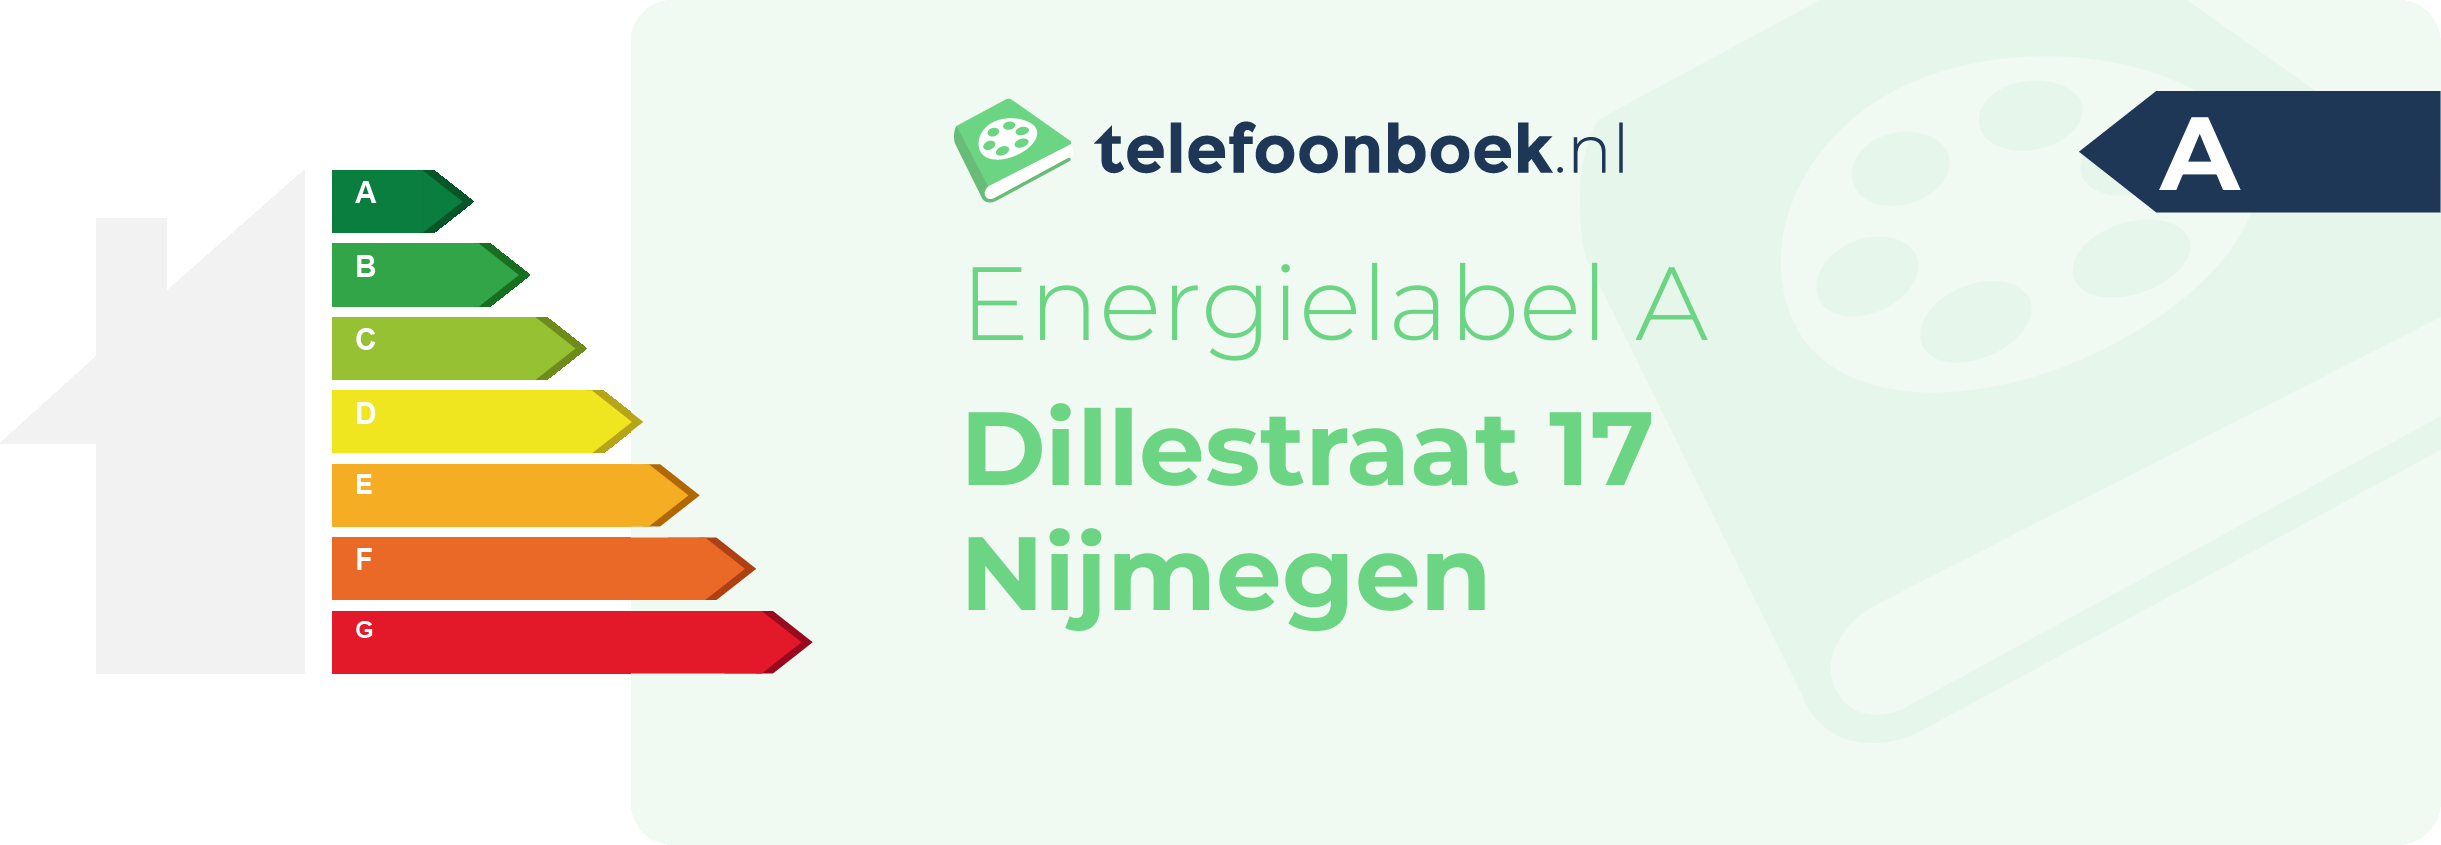 Energielabel Dillestraat 17 Nijmegen